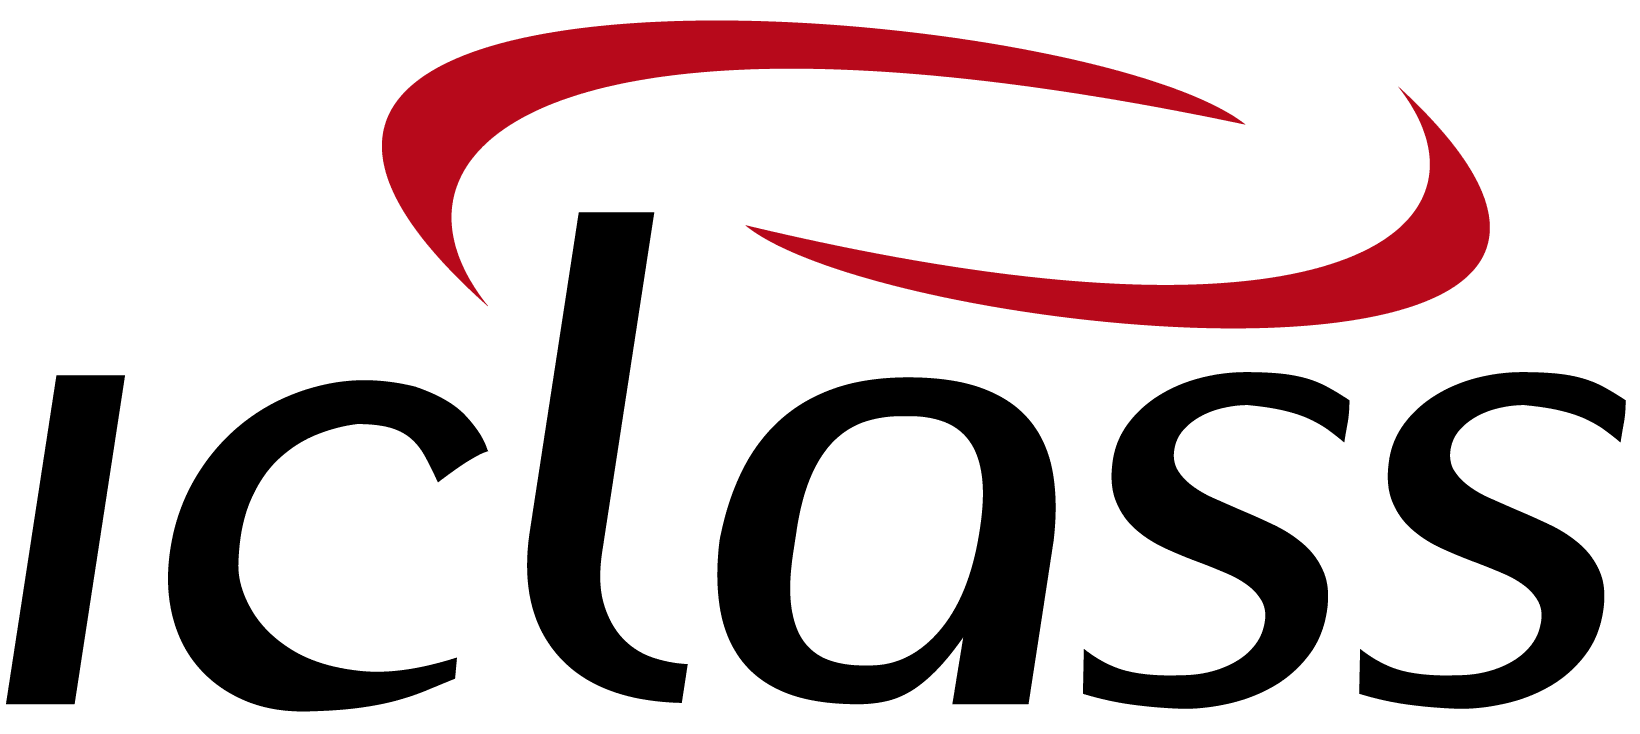 logo IClass Software de Ordem de Serviço Online Refrigeração e Ar Condicionado   Software de Ordem de Serviço | IClass